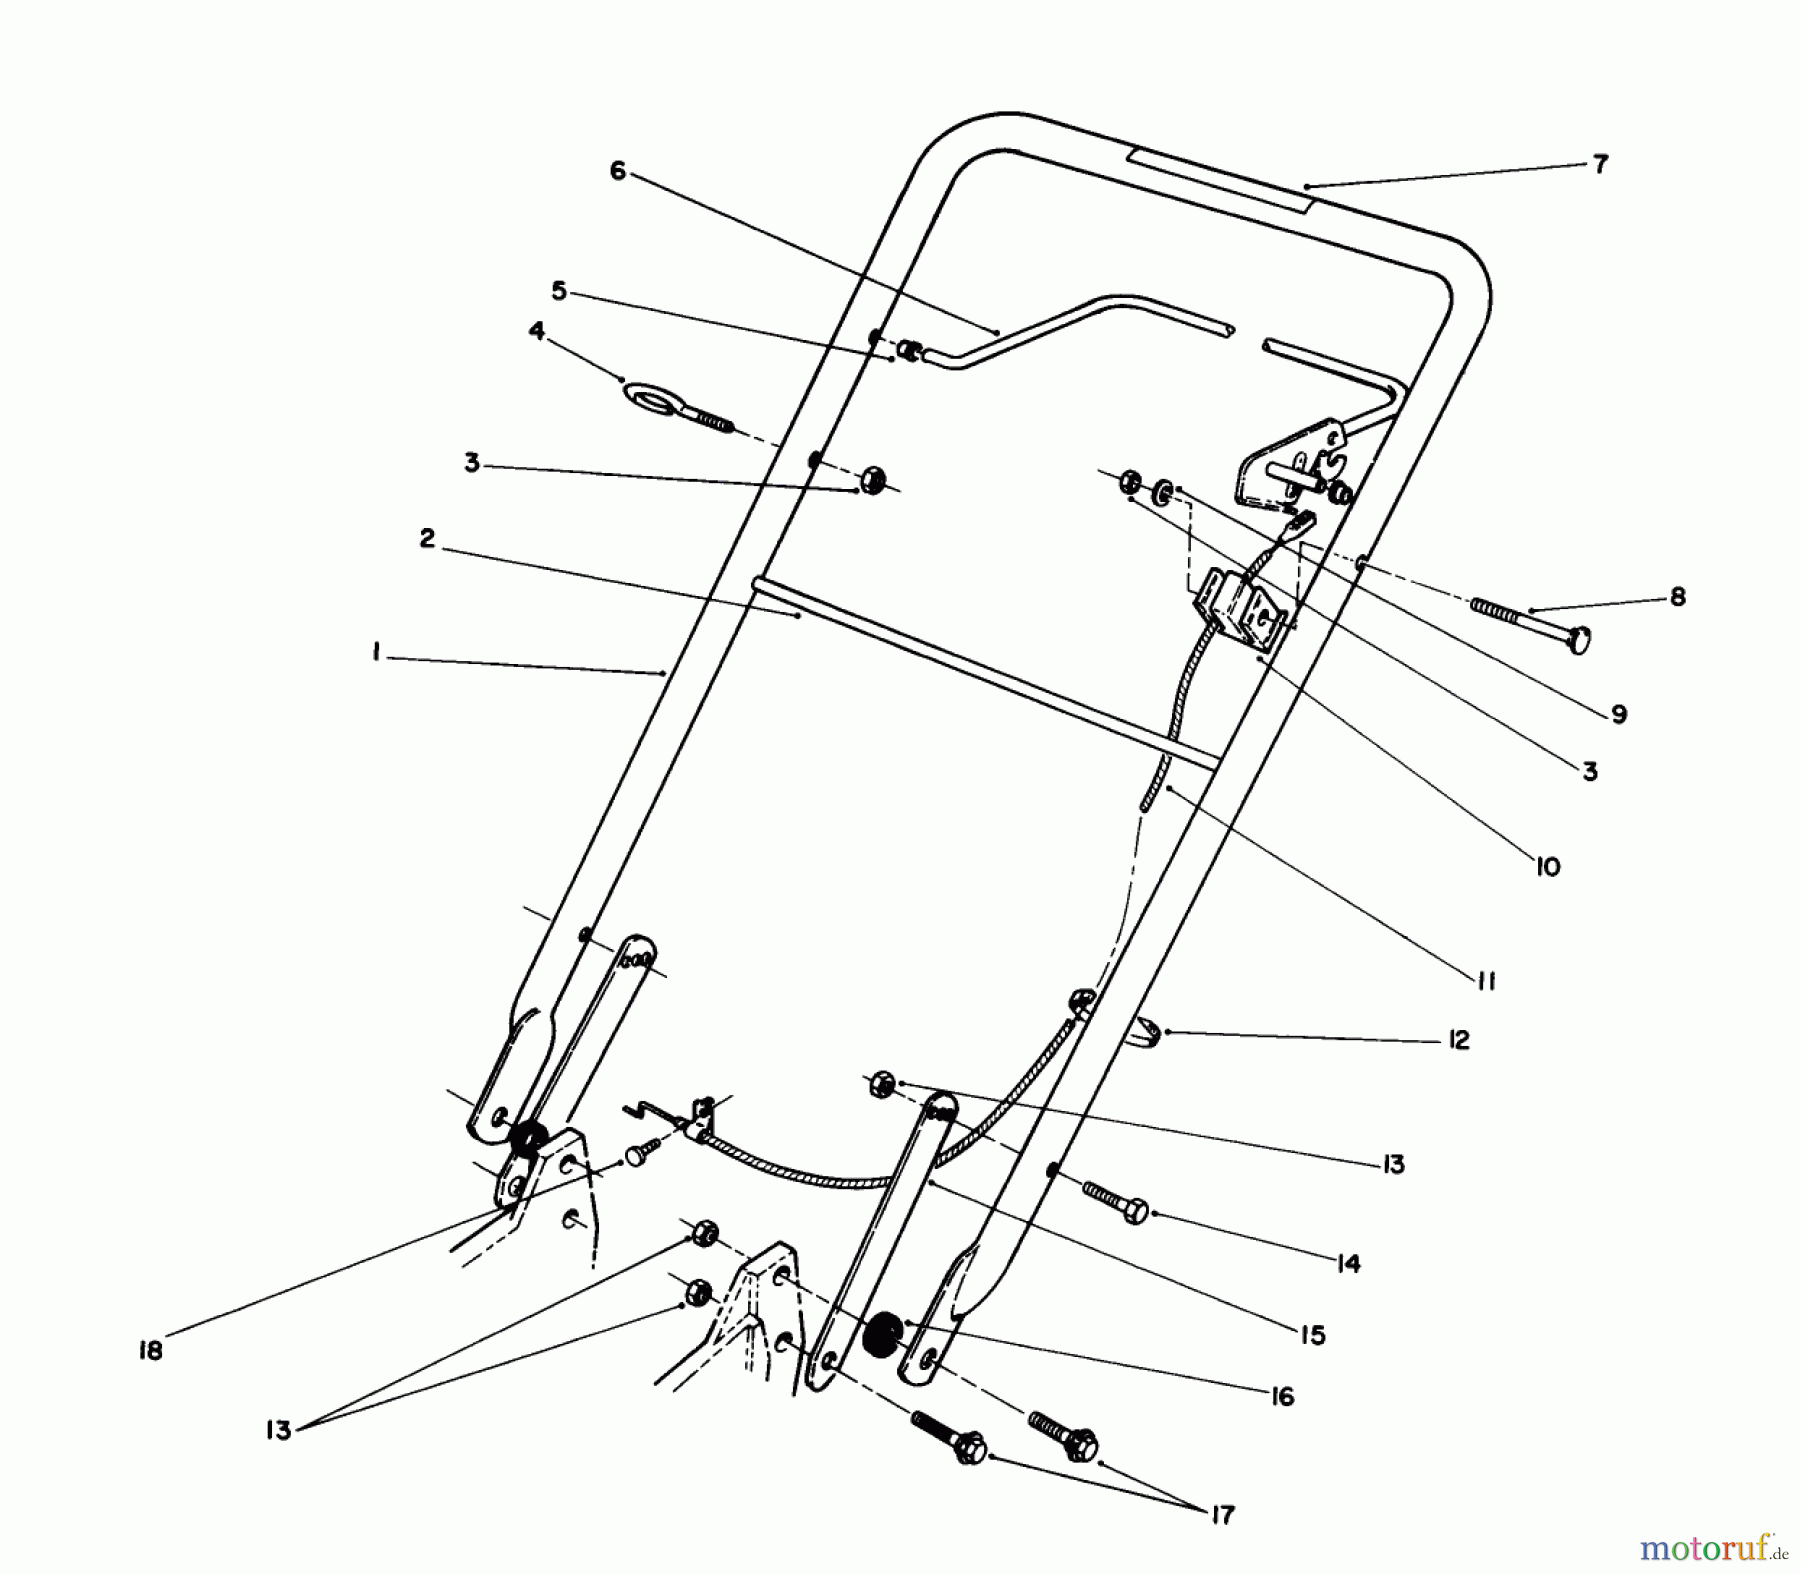  Toro Neu Mowers, Walk-Behind Seite 1 20511 - Toro Lawnmower, 1989 (9000001-9999999) HANDLE ASSEMBLY